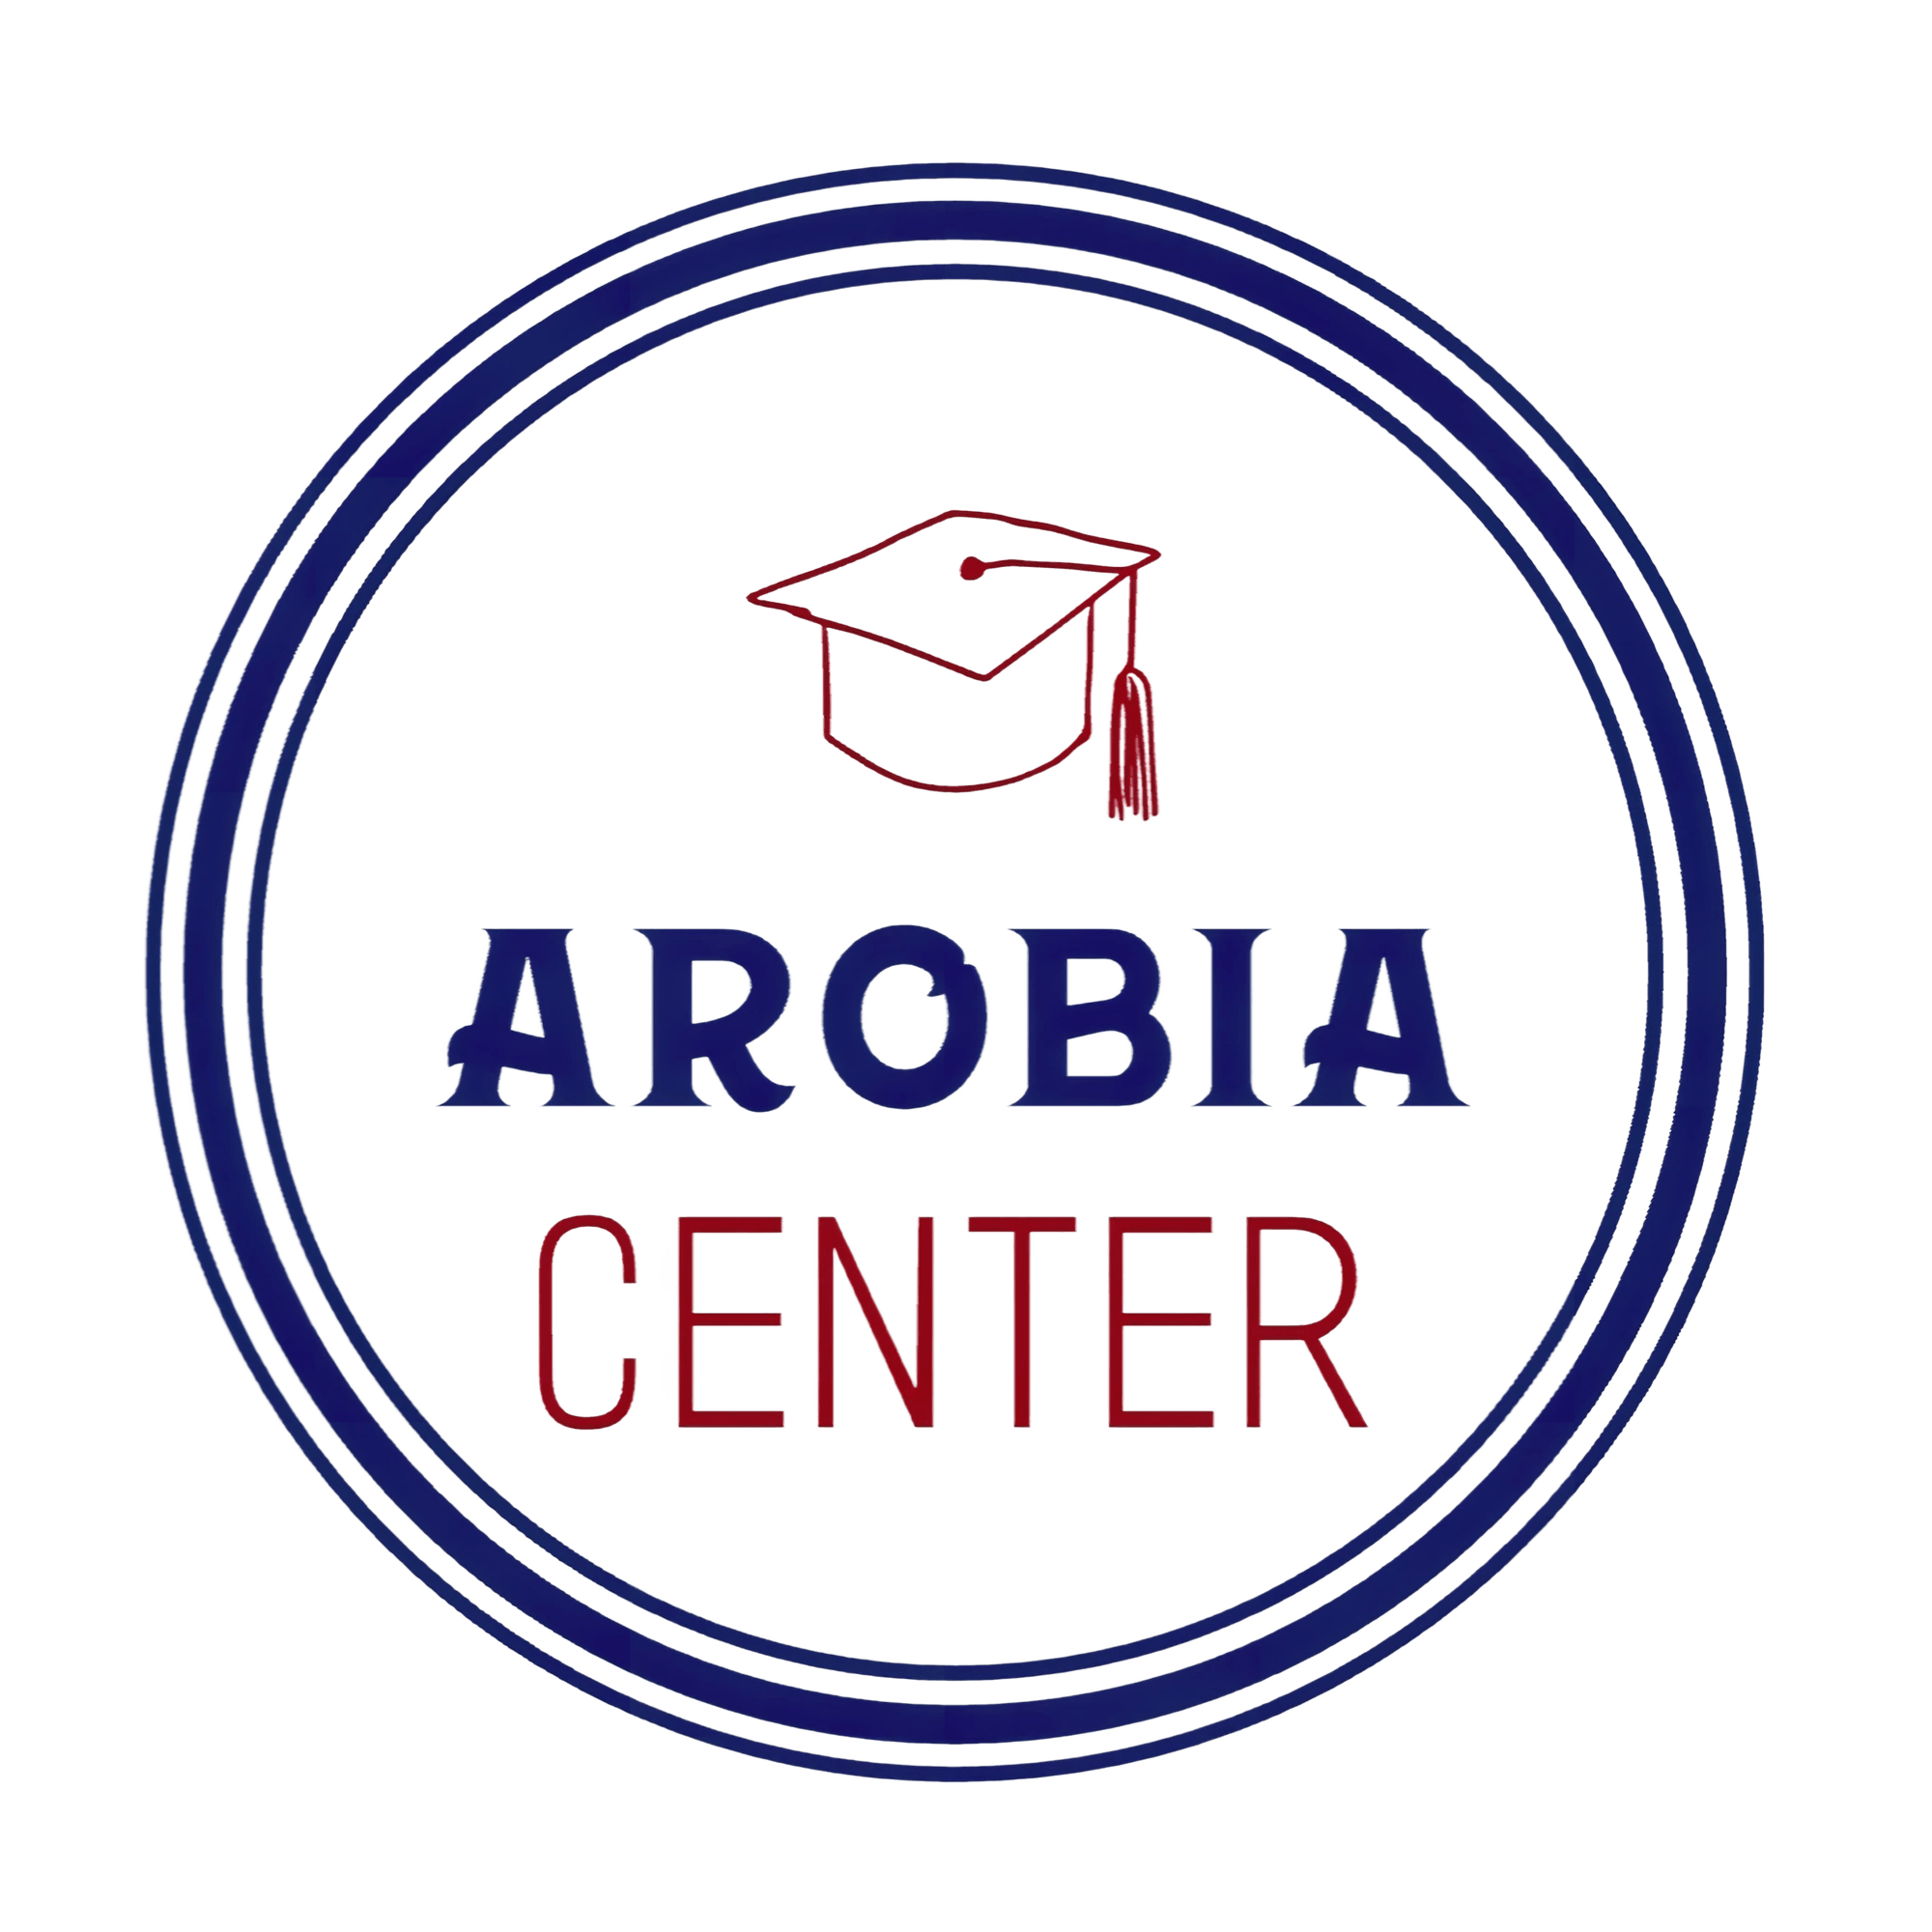 Arobia center